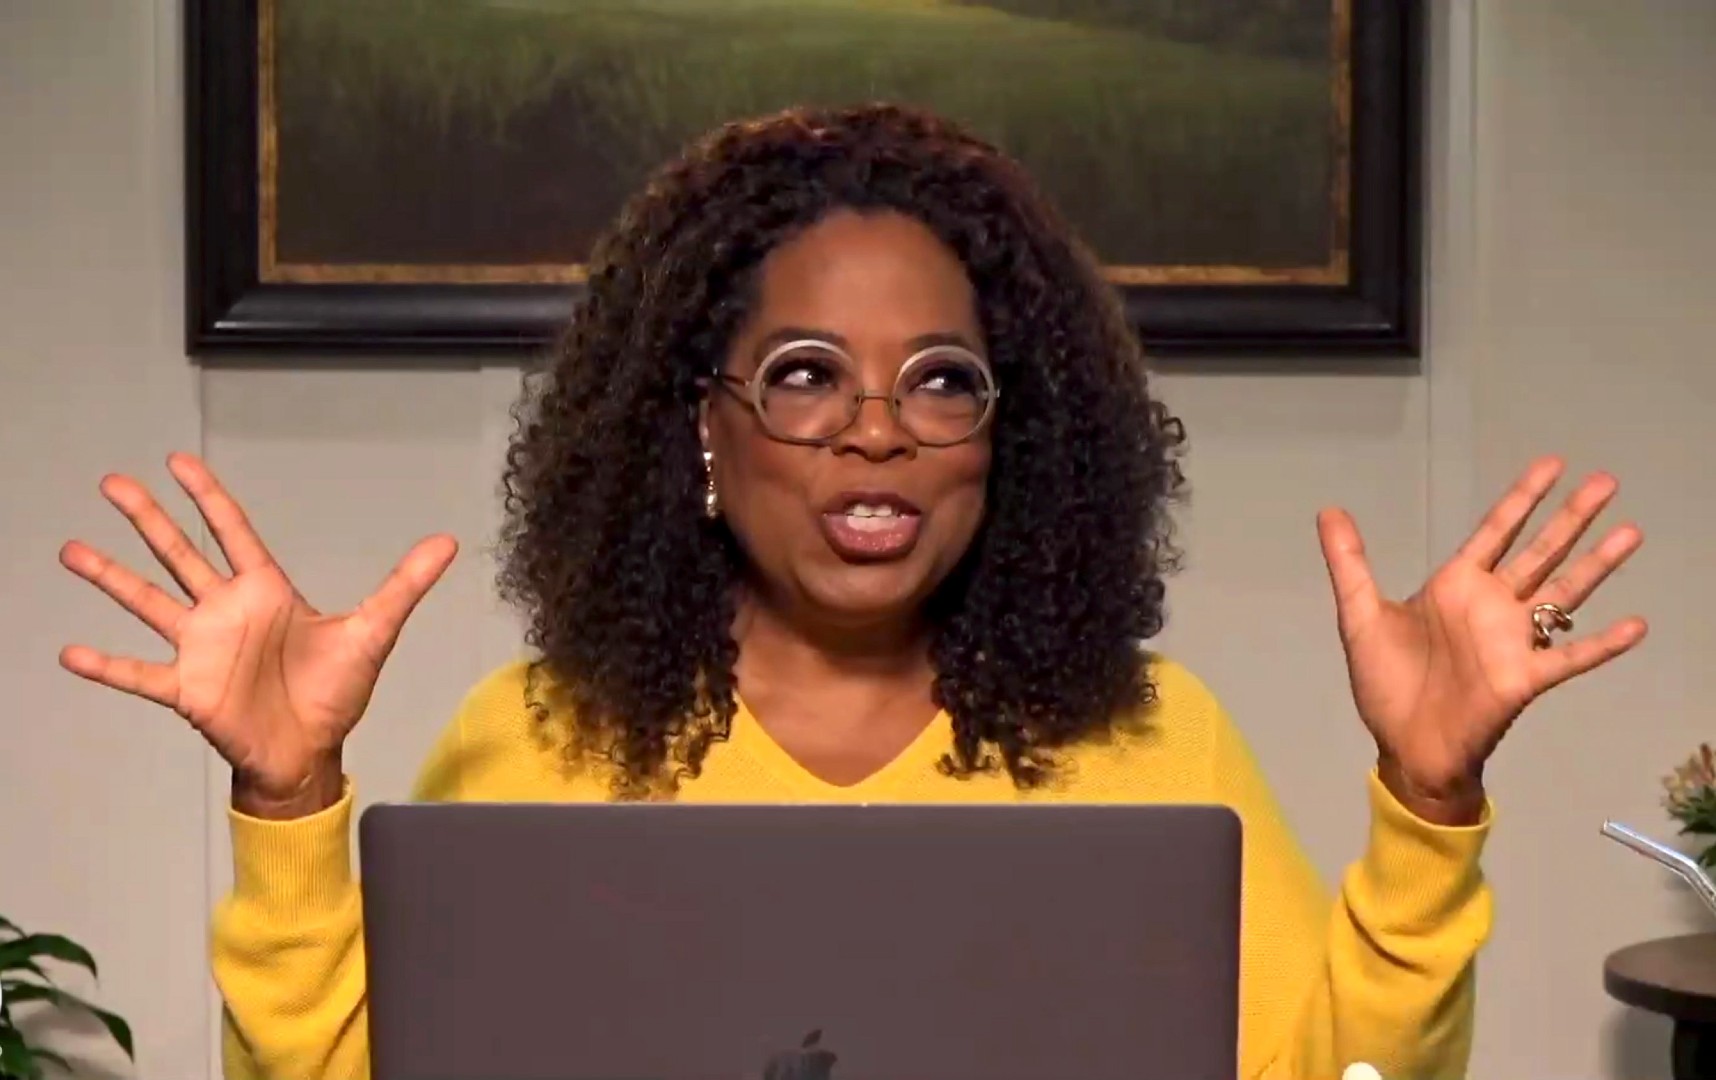 Oprah Winfrey. (Getty Images)